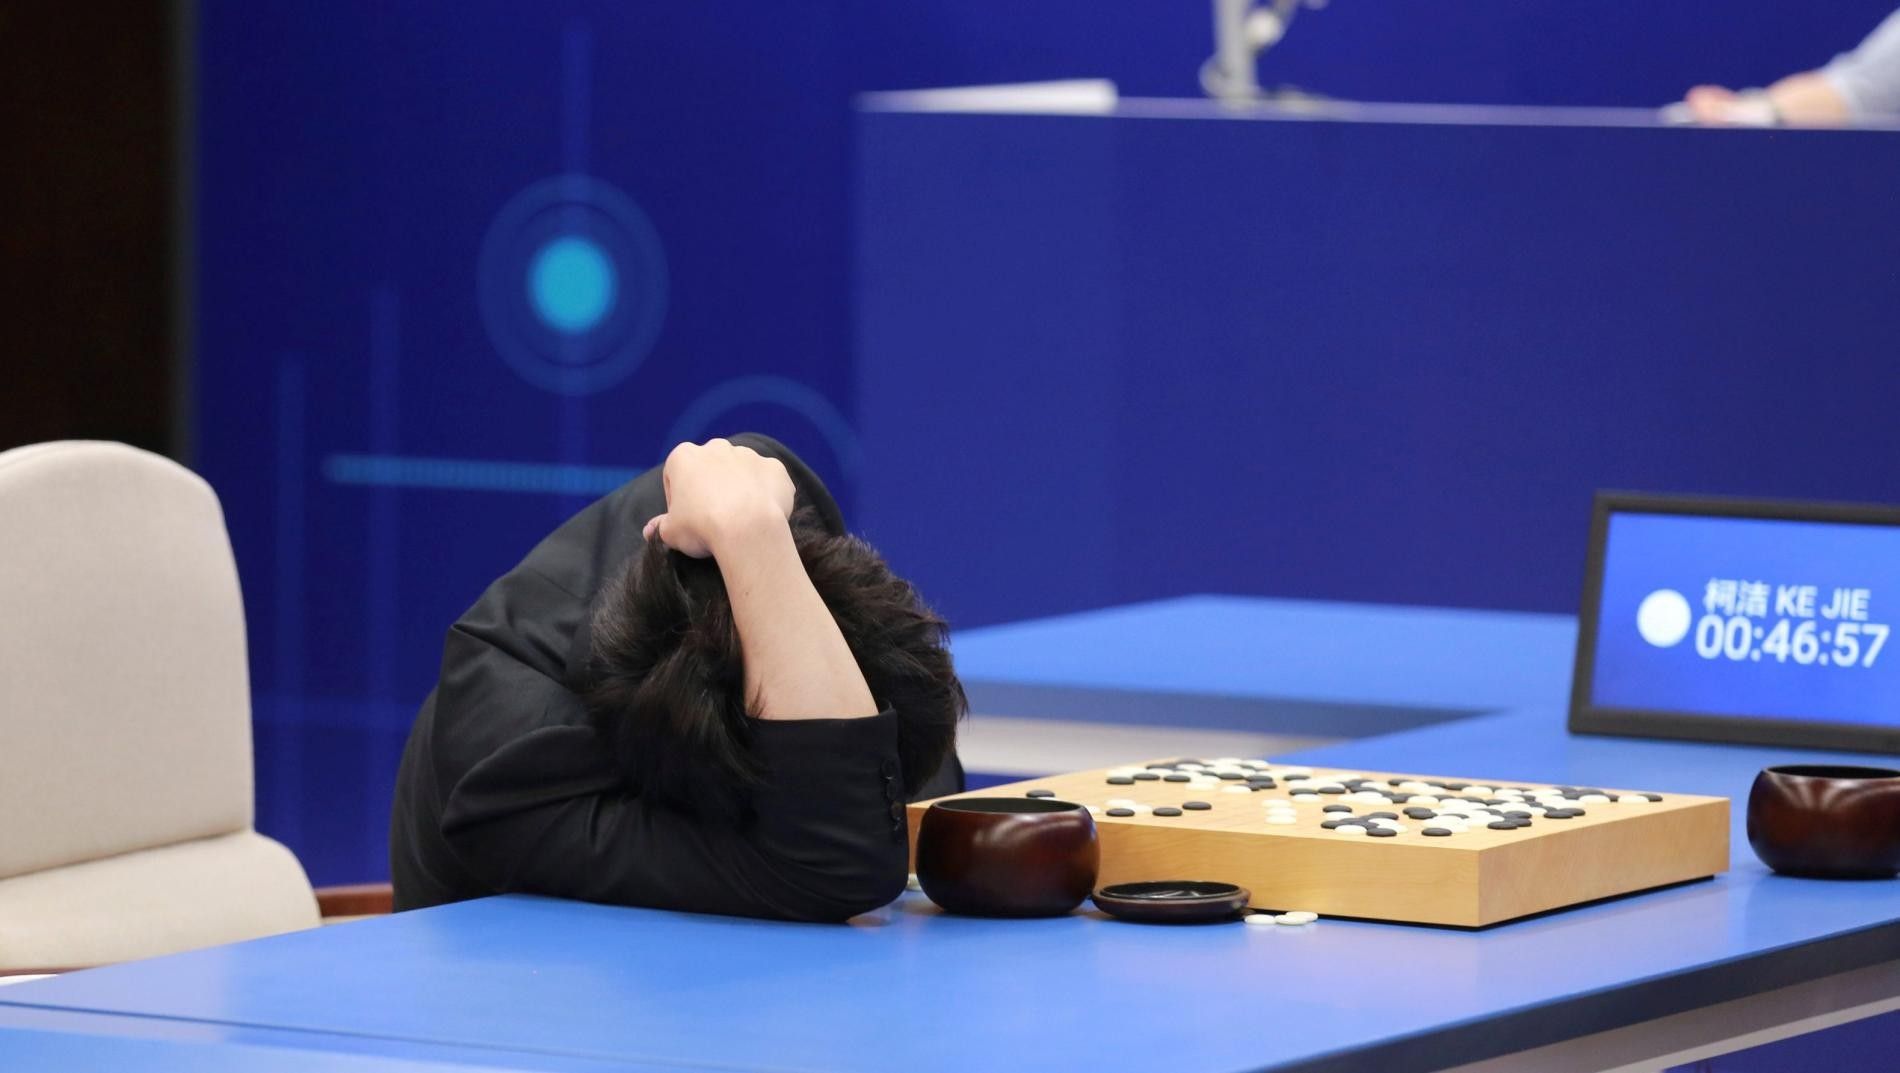 Abbildung 7: Ke Jie gegen AlphaGo, Reuters/Stringer